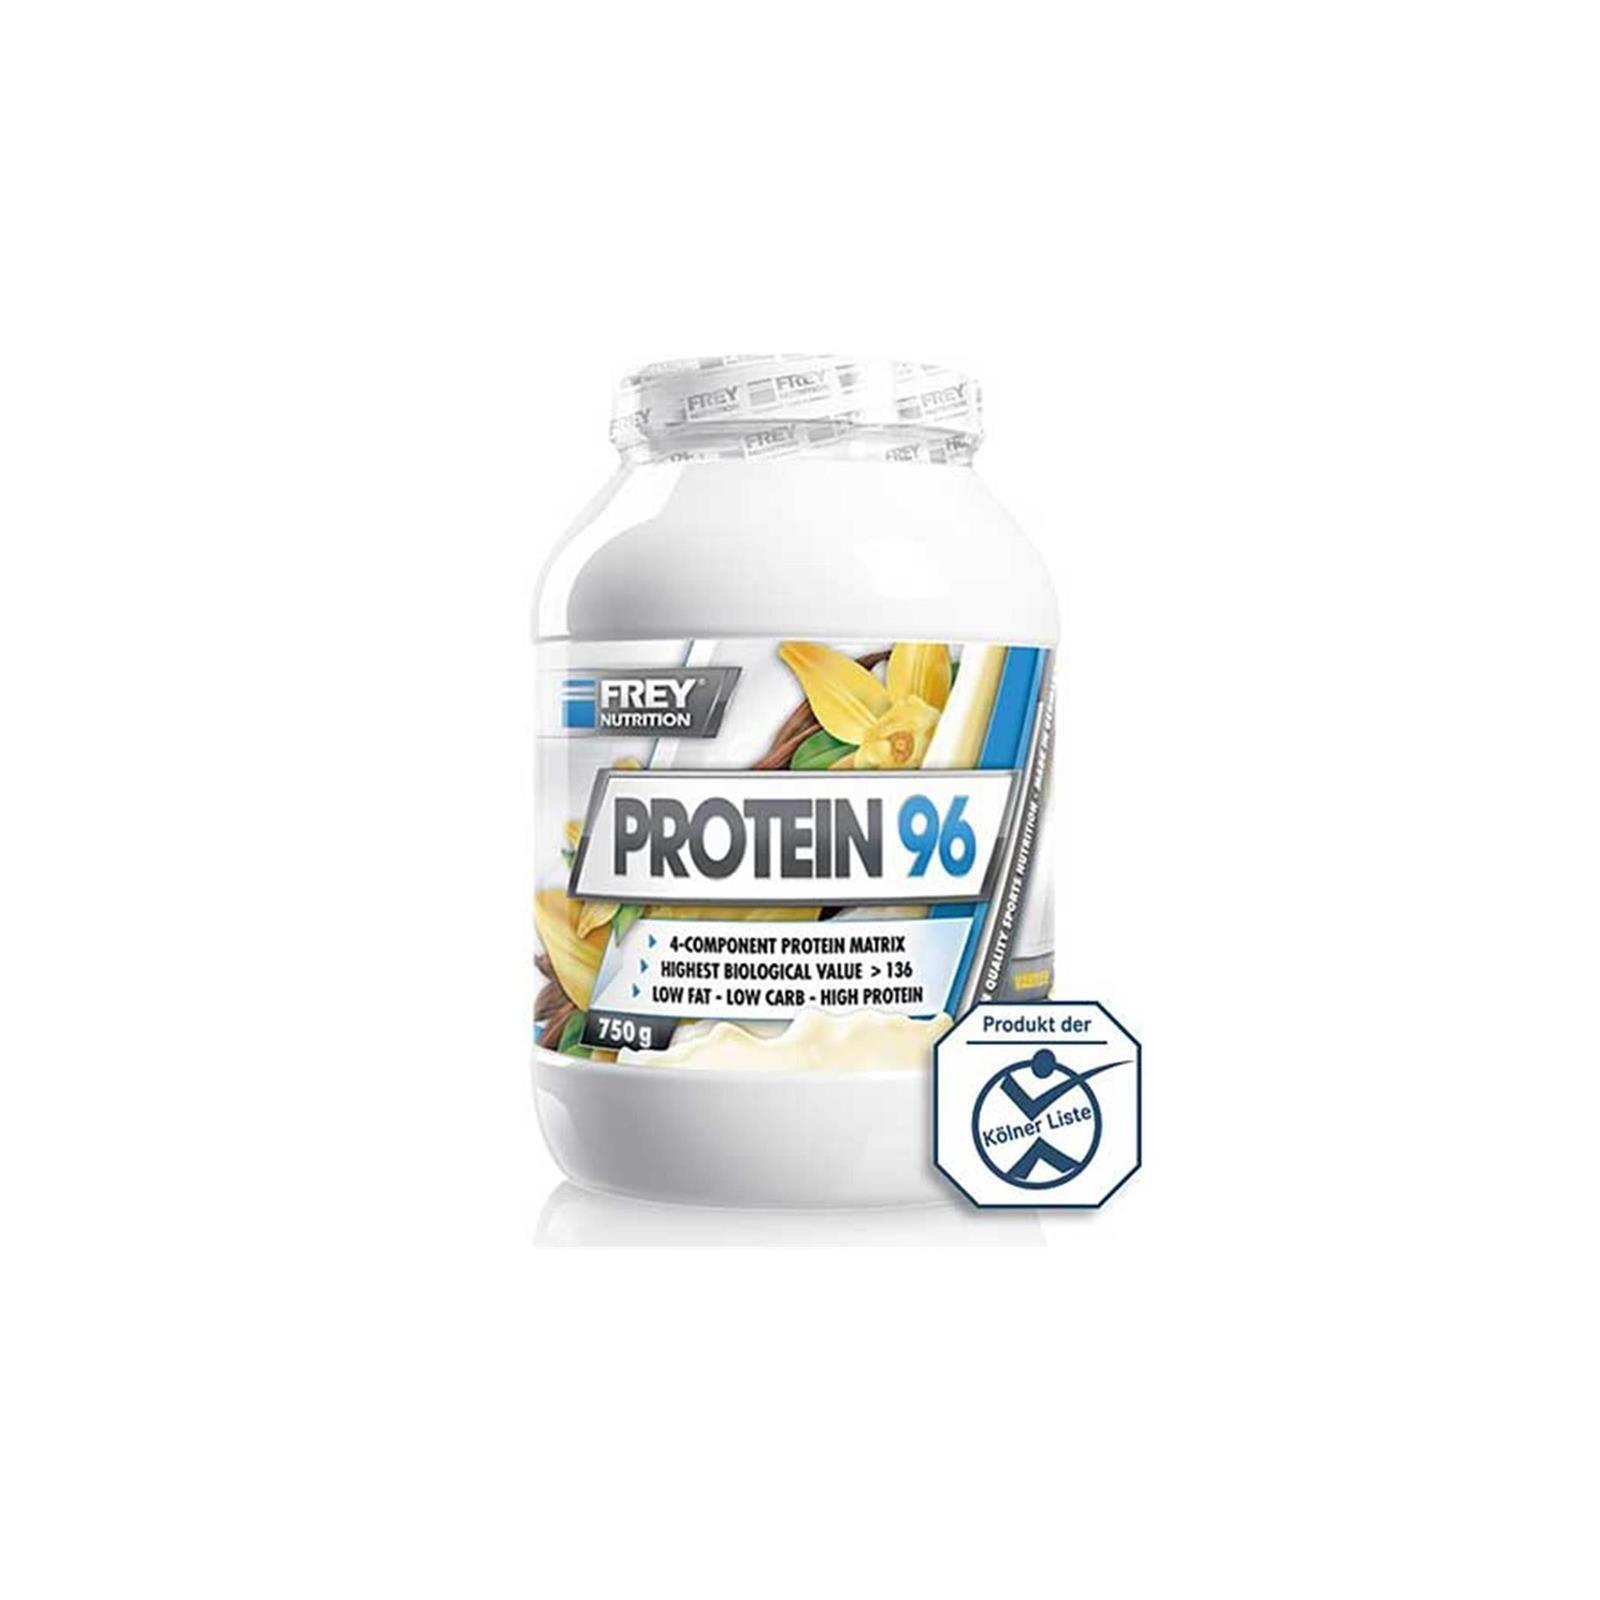 Frey Nutrition Protein 96, 750g